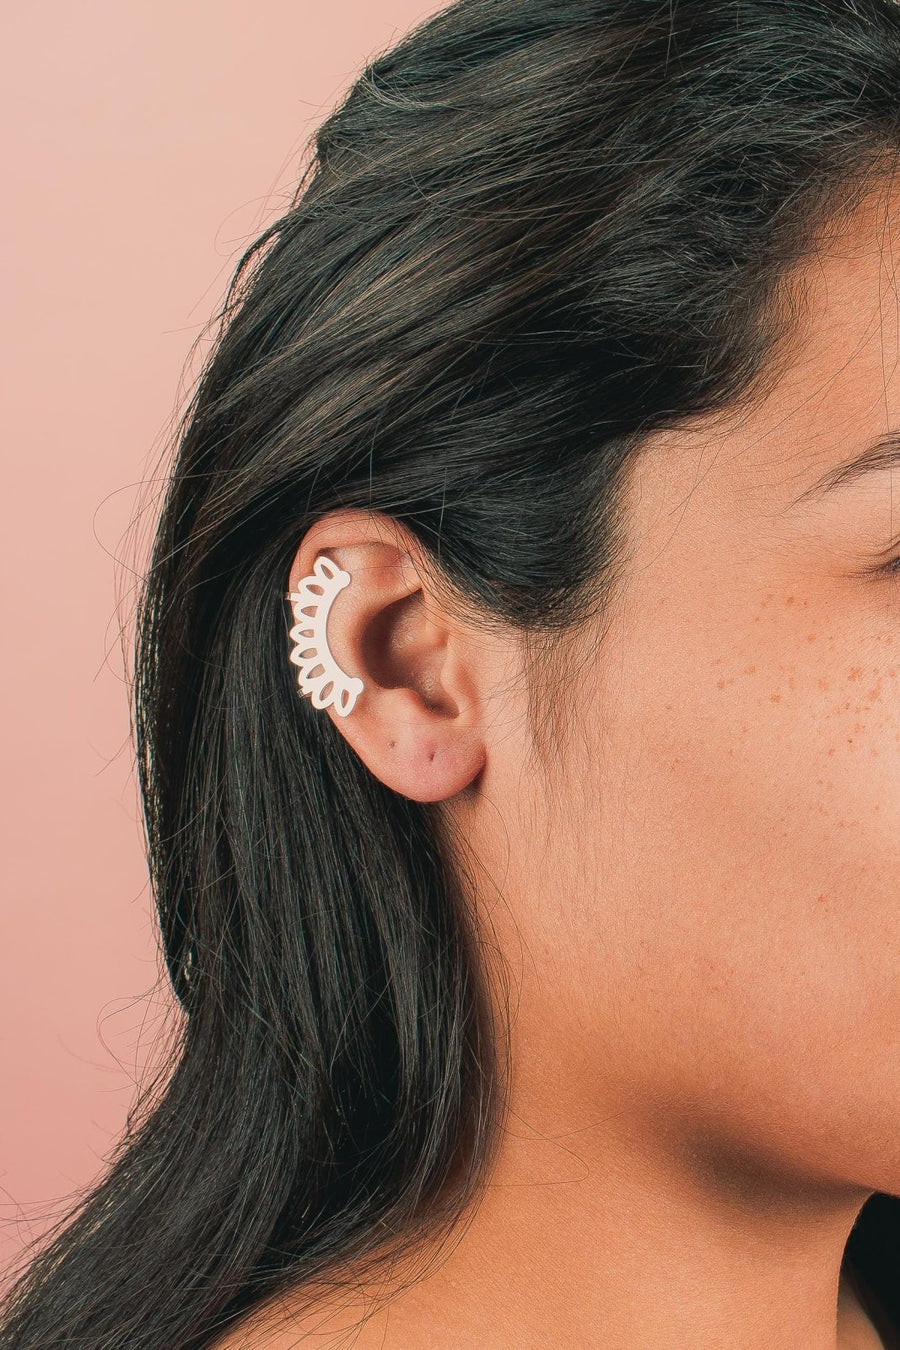 Cleo Ear Cuff - Melanie Golden Jewelry - _badge_new, body jewelry, ear cuffs, earrings, flora, new